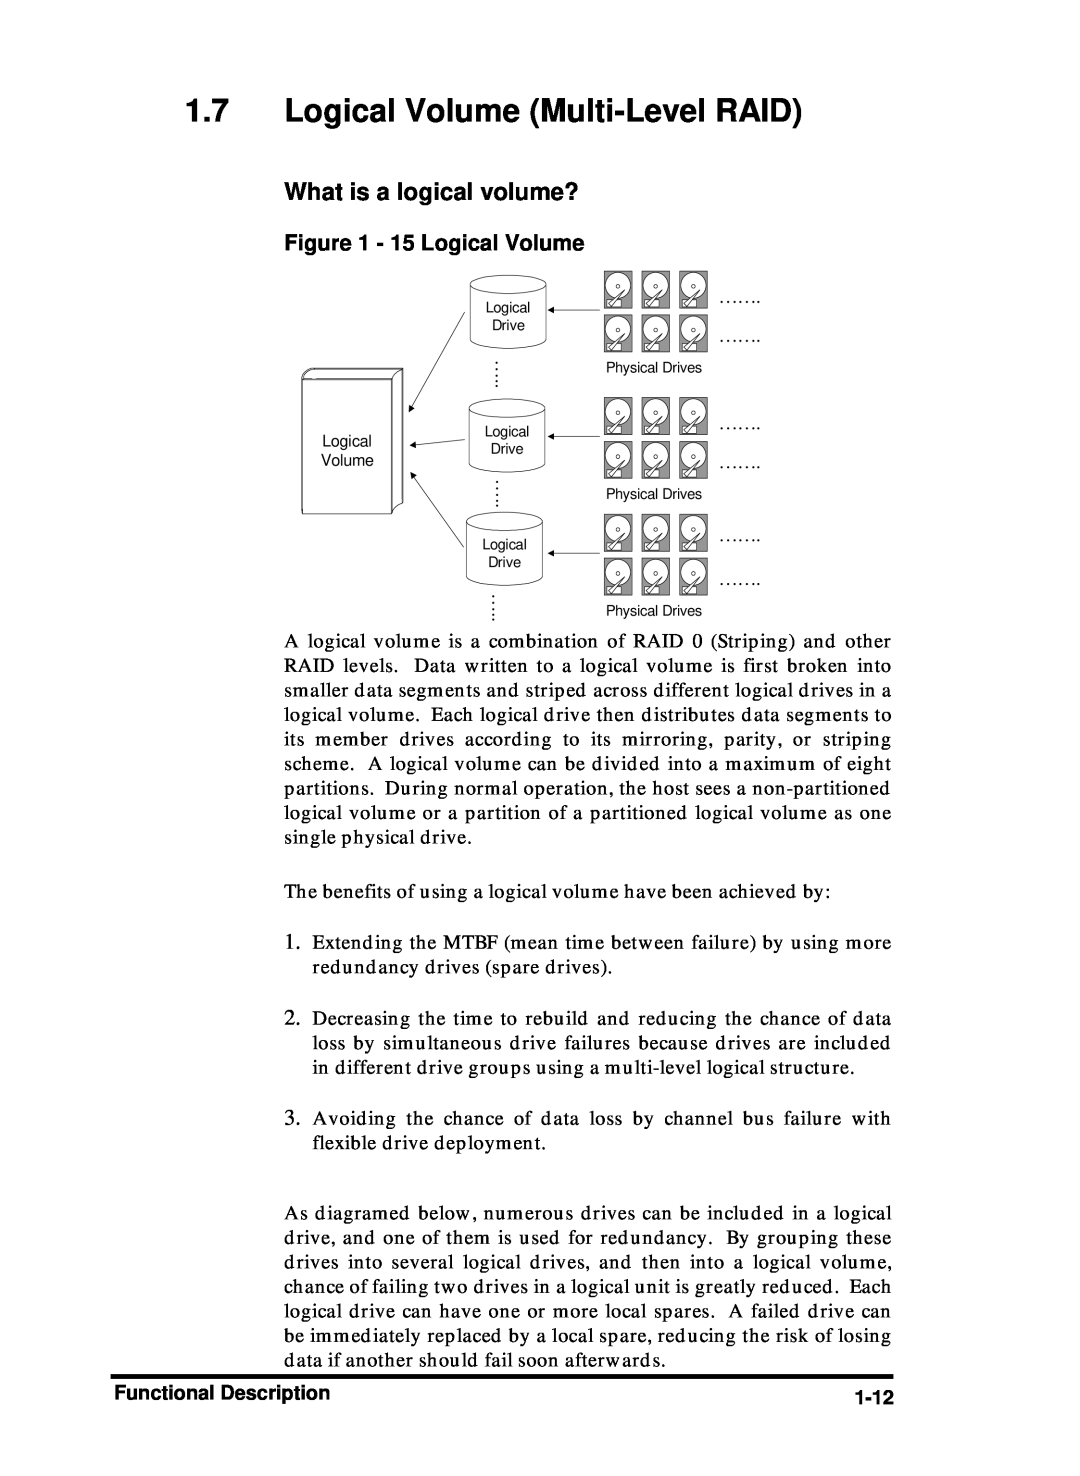 Compaq Infortrend manual Logical Volume Multi-Level RAID, 15 Logical Volume, What is a logical volume? 